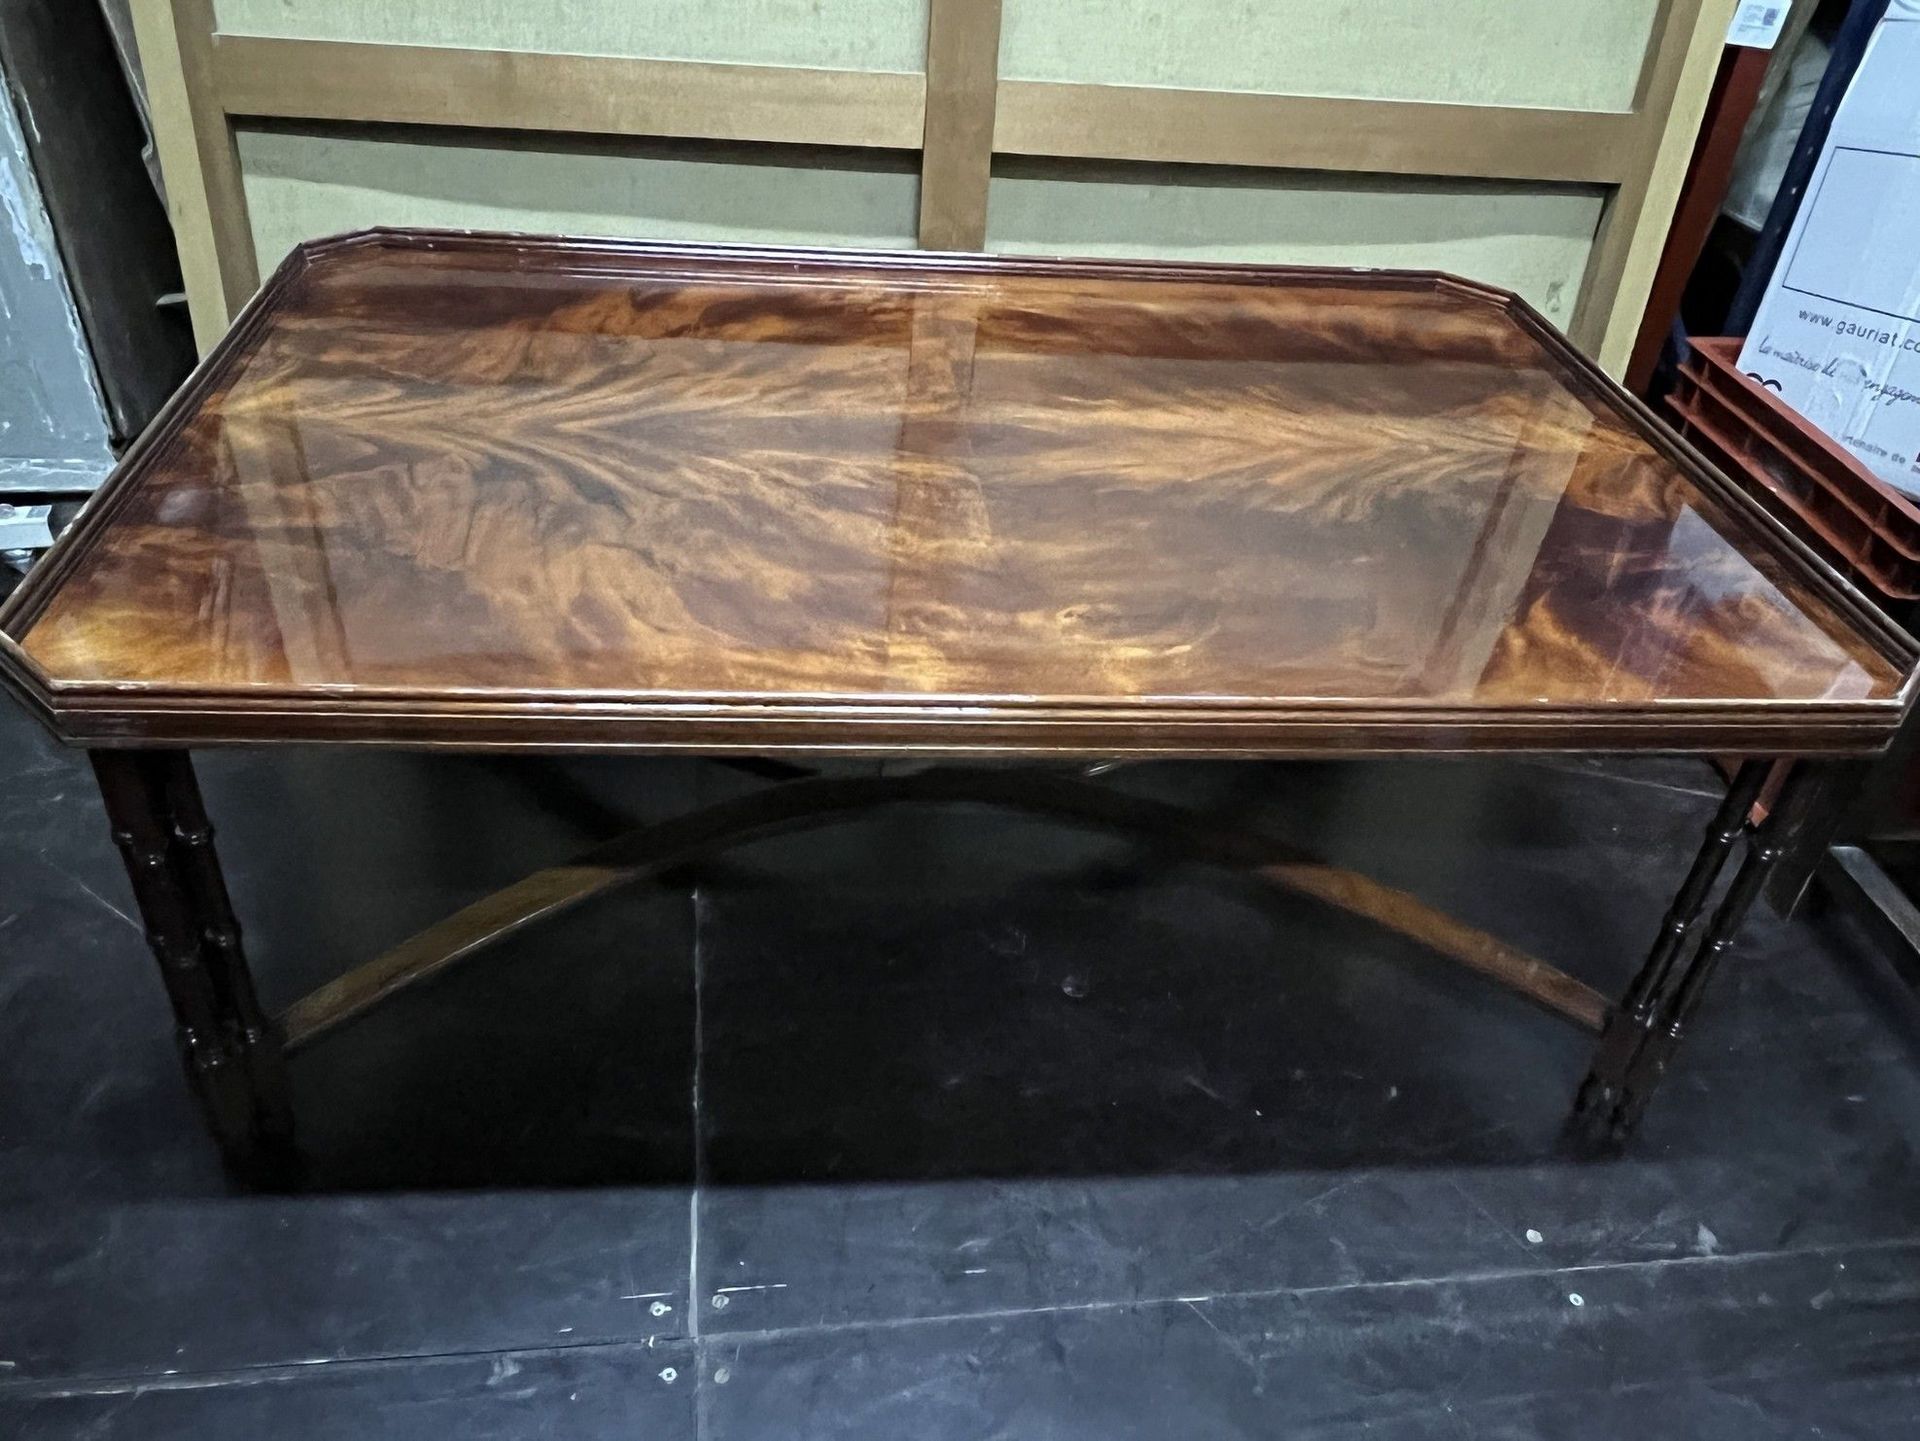 Null Tavolino in legno a sezione quadrata con piano in vetro per esposizione.

V&hellip;